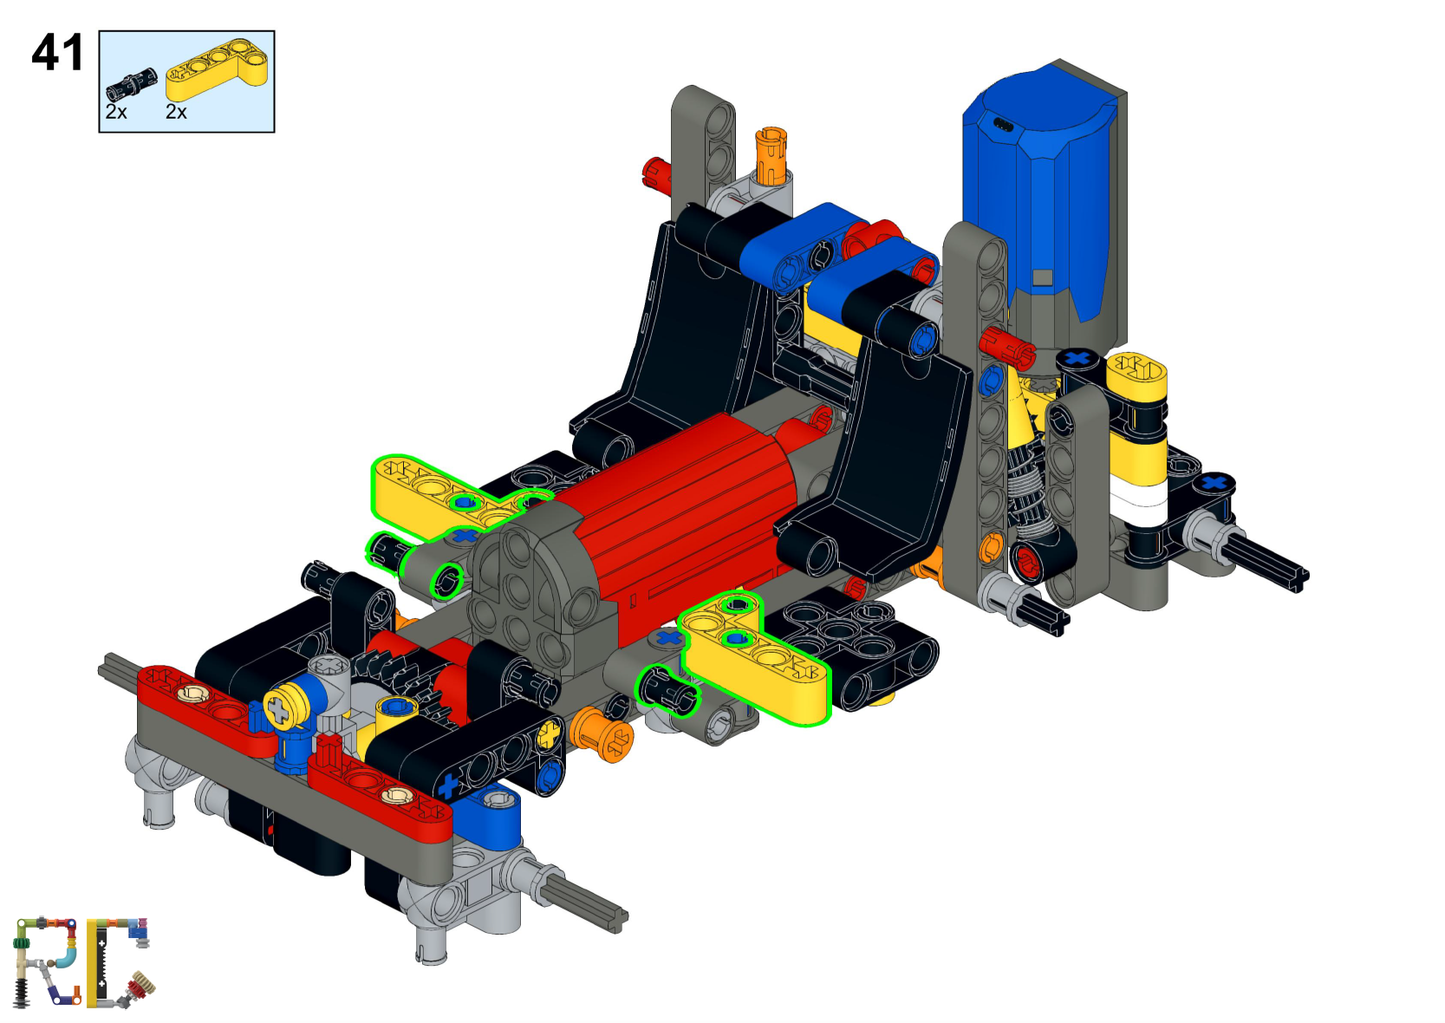 [Instructions] Motorize LEGO 42122 Jeep Wrangler